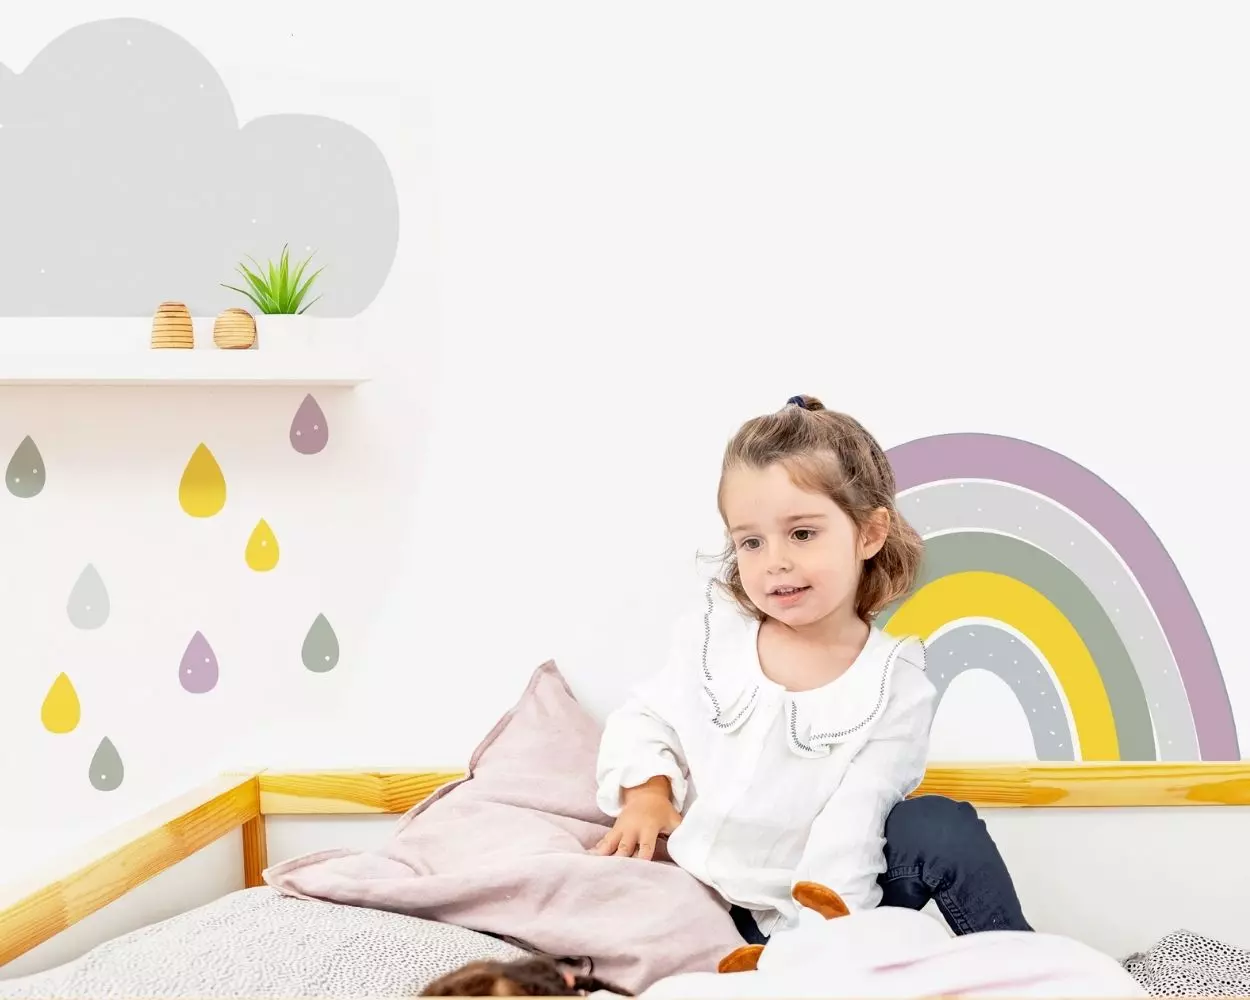 Wandtattoo Regenbogen fürs Kinderzimmer